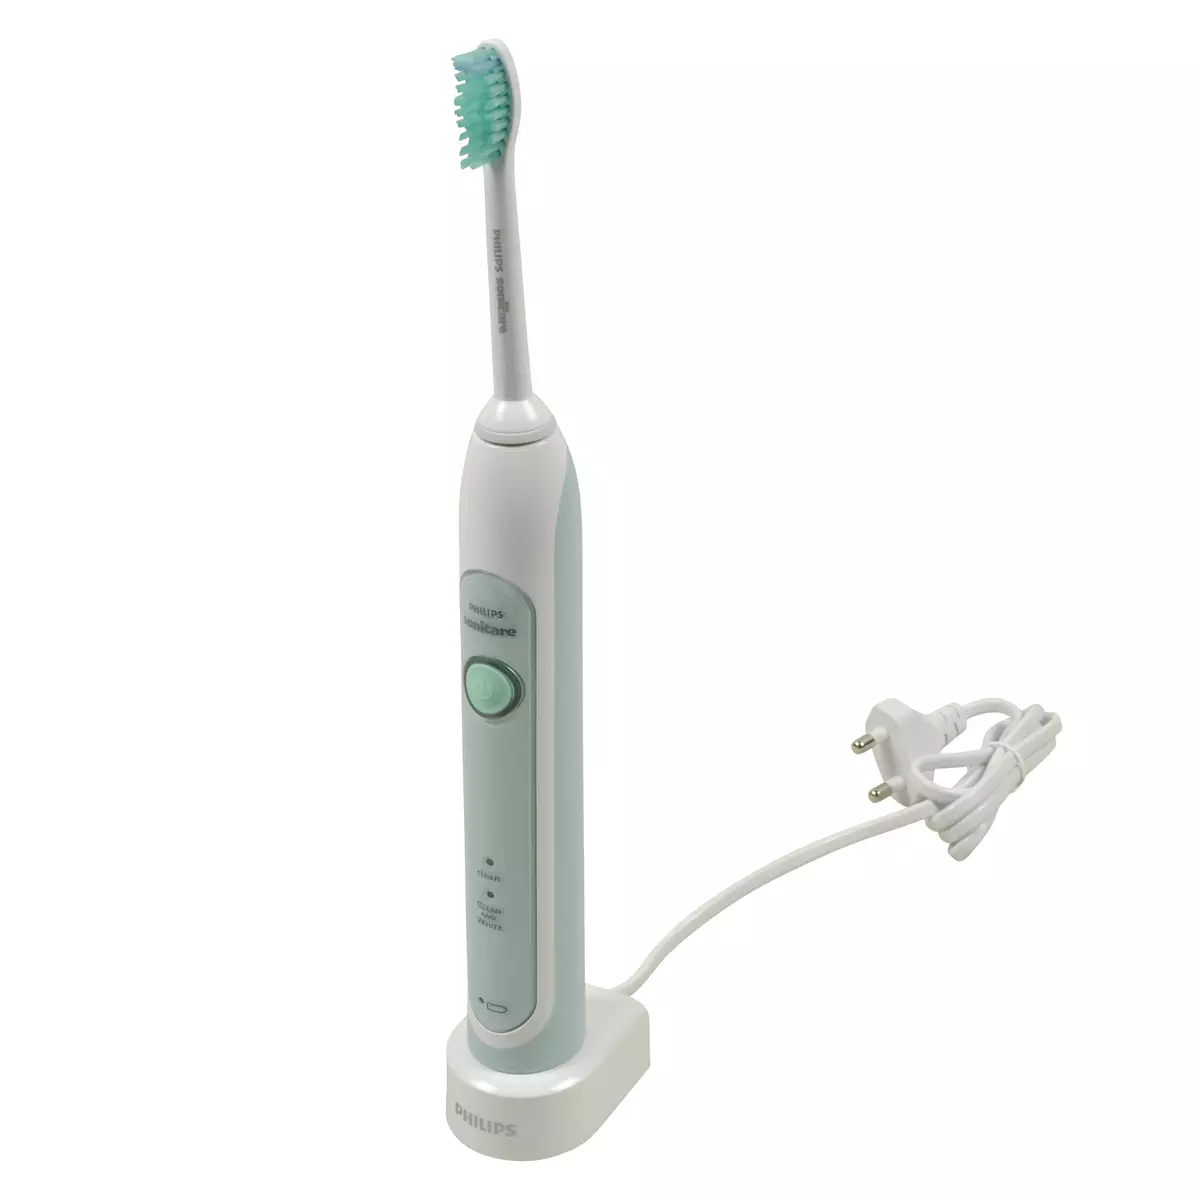 Рейтинг кращих електричні зубні щітки: топ електрощіток для зубів, огляд марок та порівняння моделей, найкращі щітки на думку стоматологів 24000_16